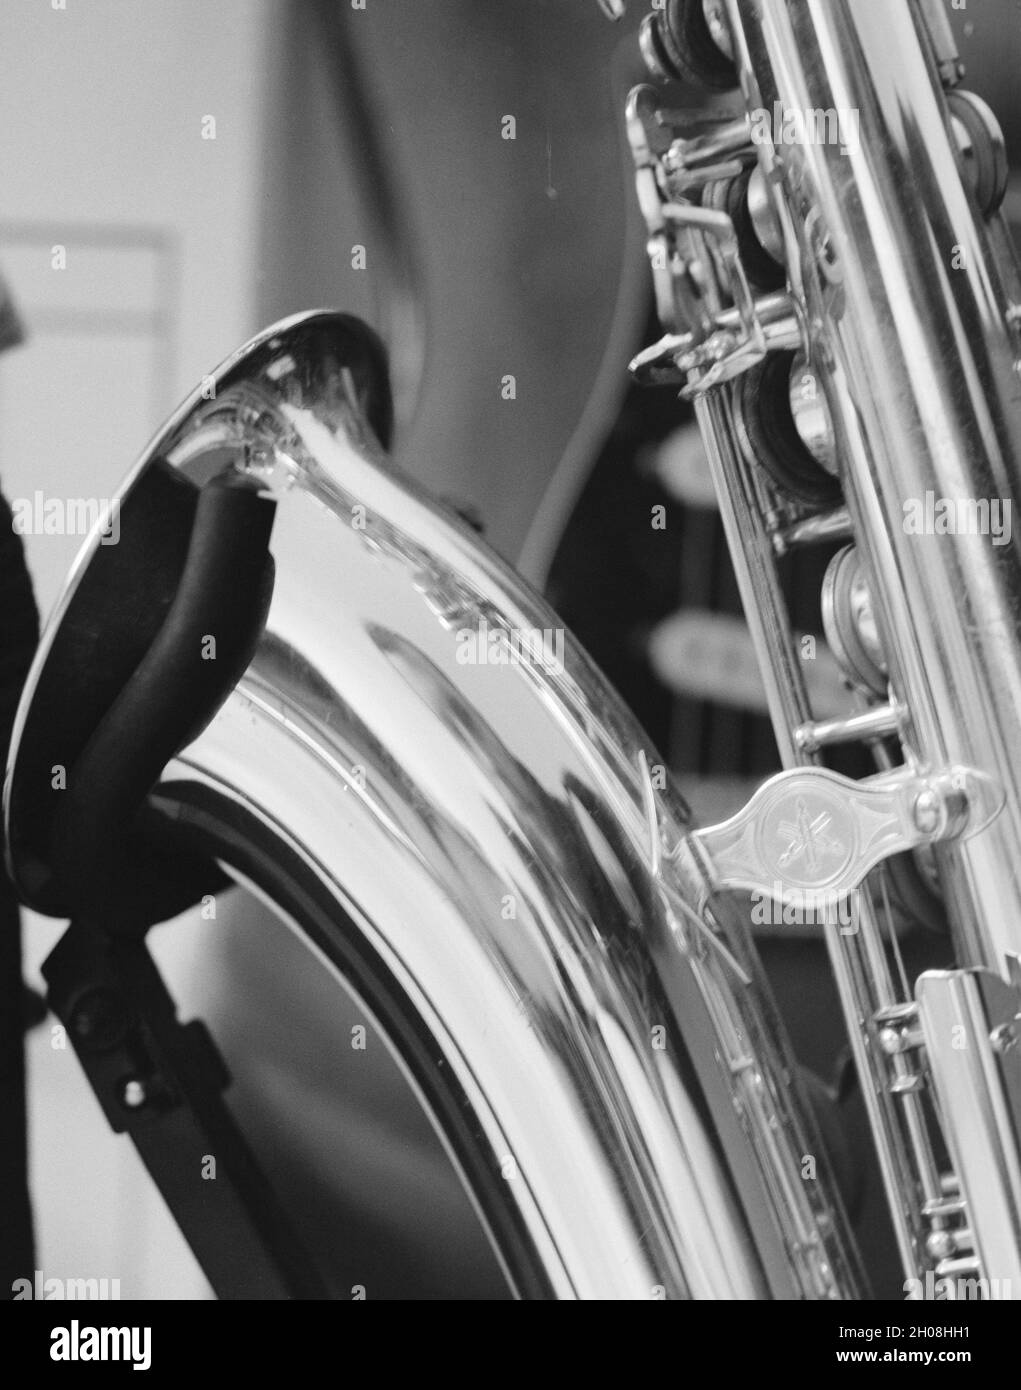 Prise de vue en niveaux de gris d'un saxophone sous les lumières avec un arrière-plan flou Banque D'Images